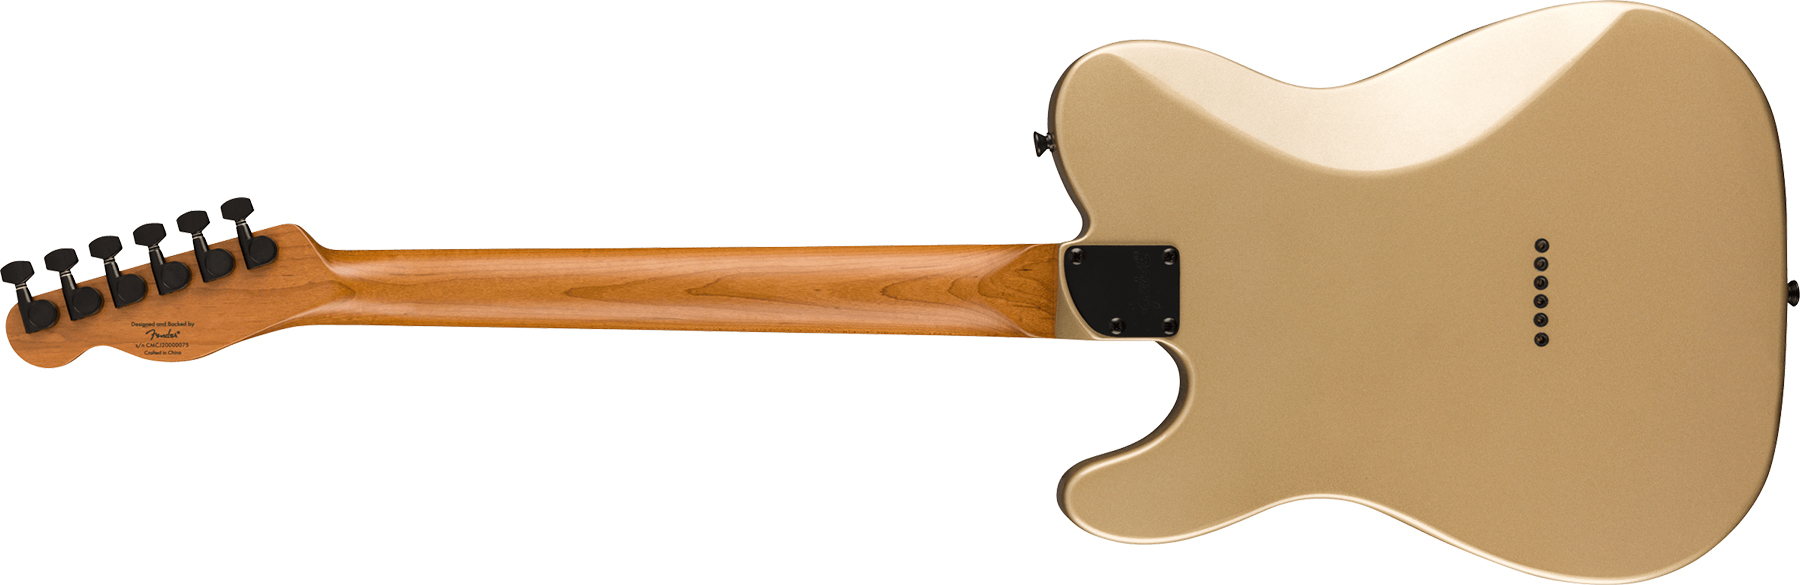 Squier Tele Contemporary Rh Hh Ht Mn - Shoreline Gold - Televorm elektrische gitaar - Variation 1